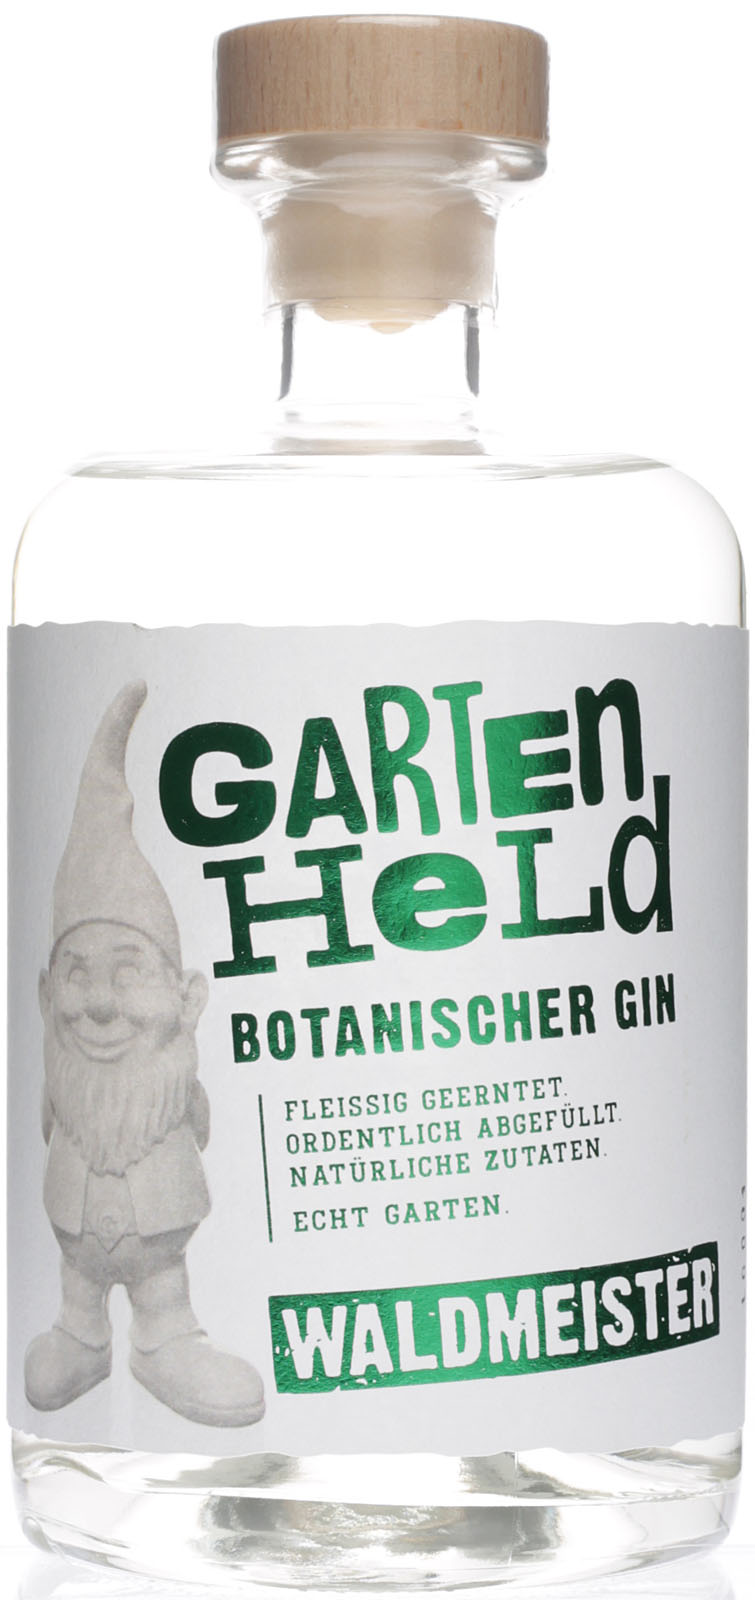 Gartenheld Botanischer Gin Waldmeister - Bei Sho im uns